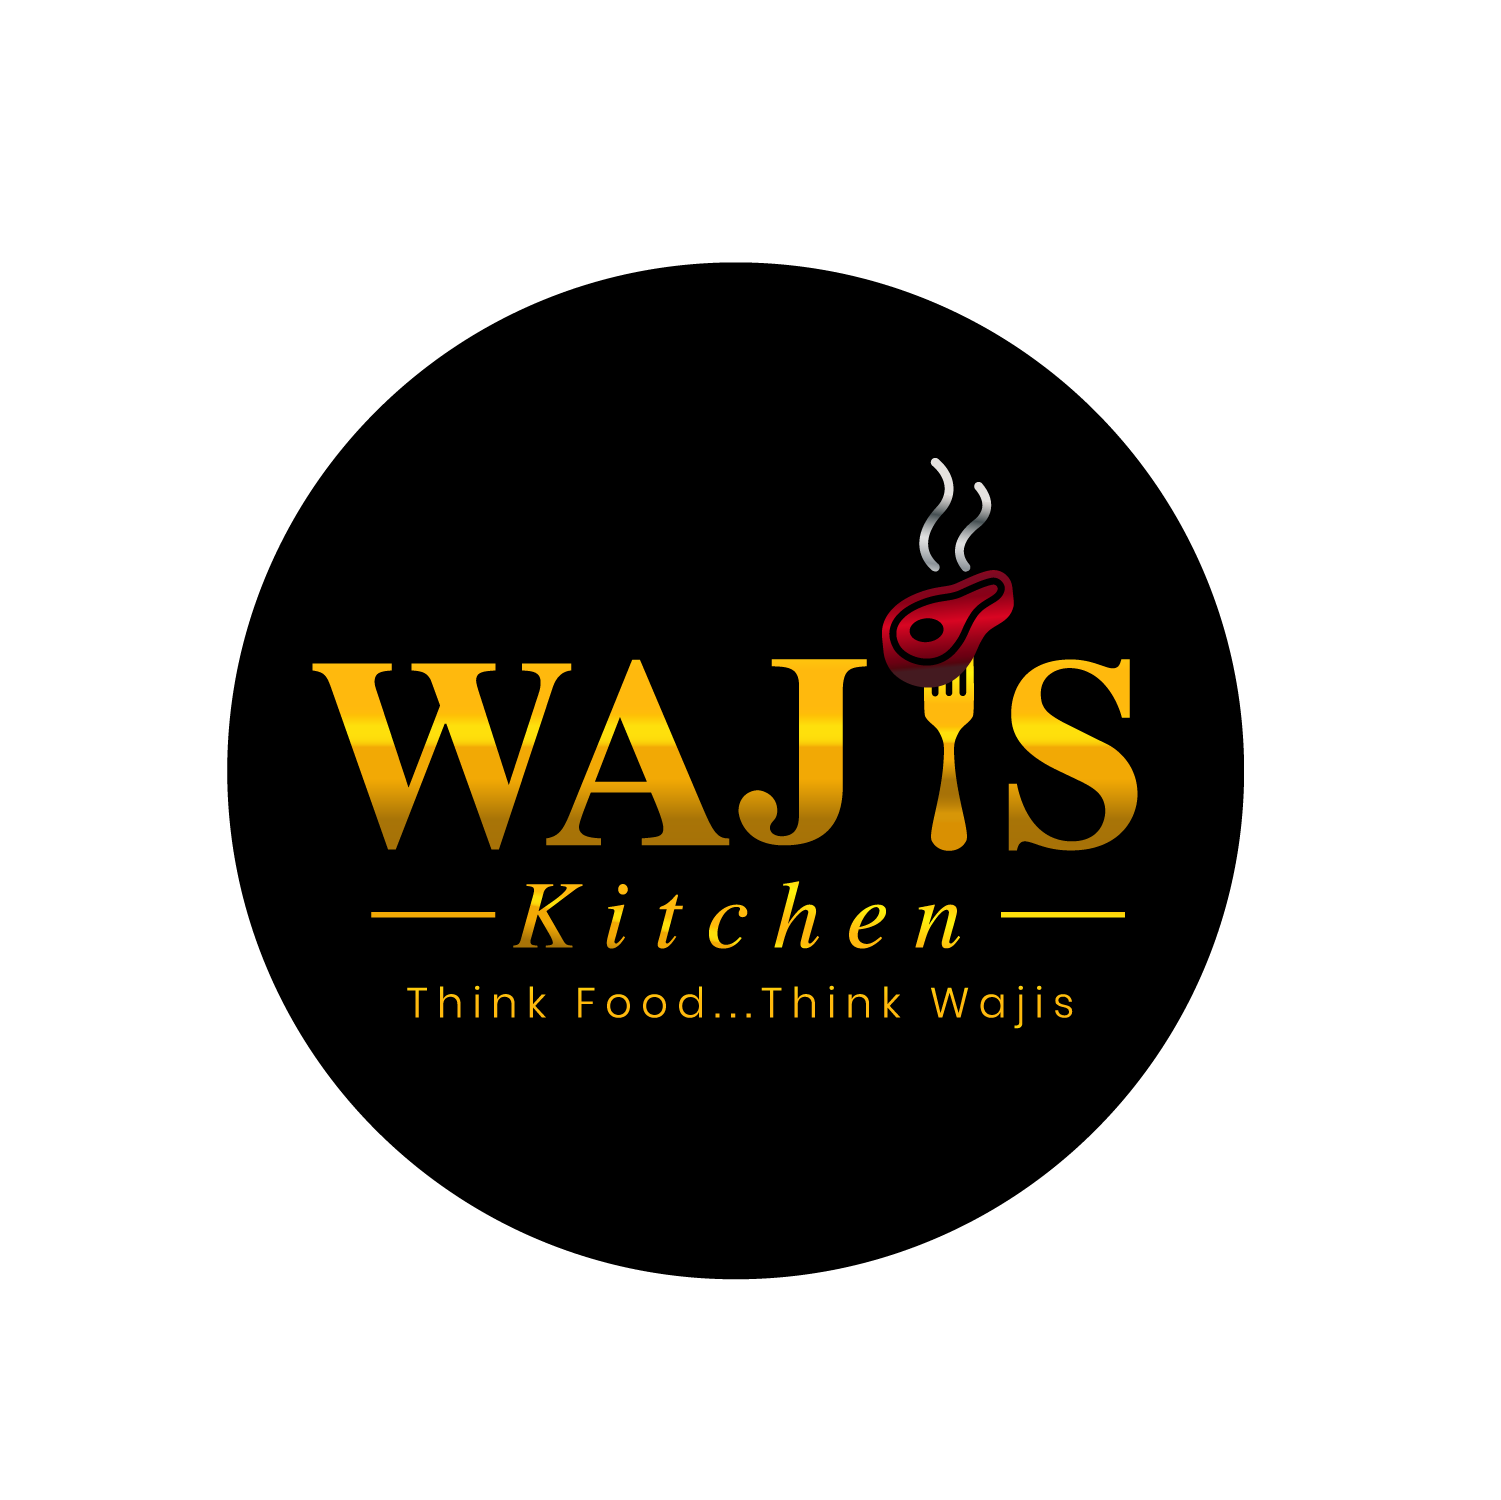 Wajis Kitchen